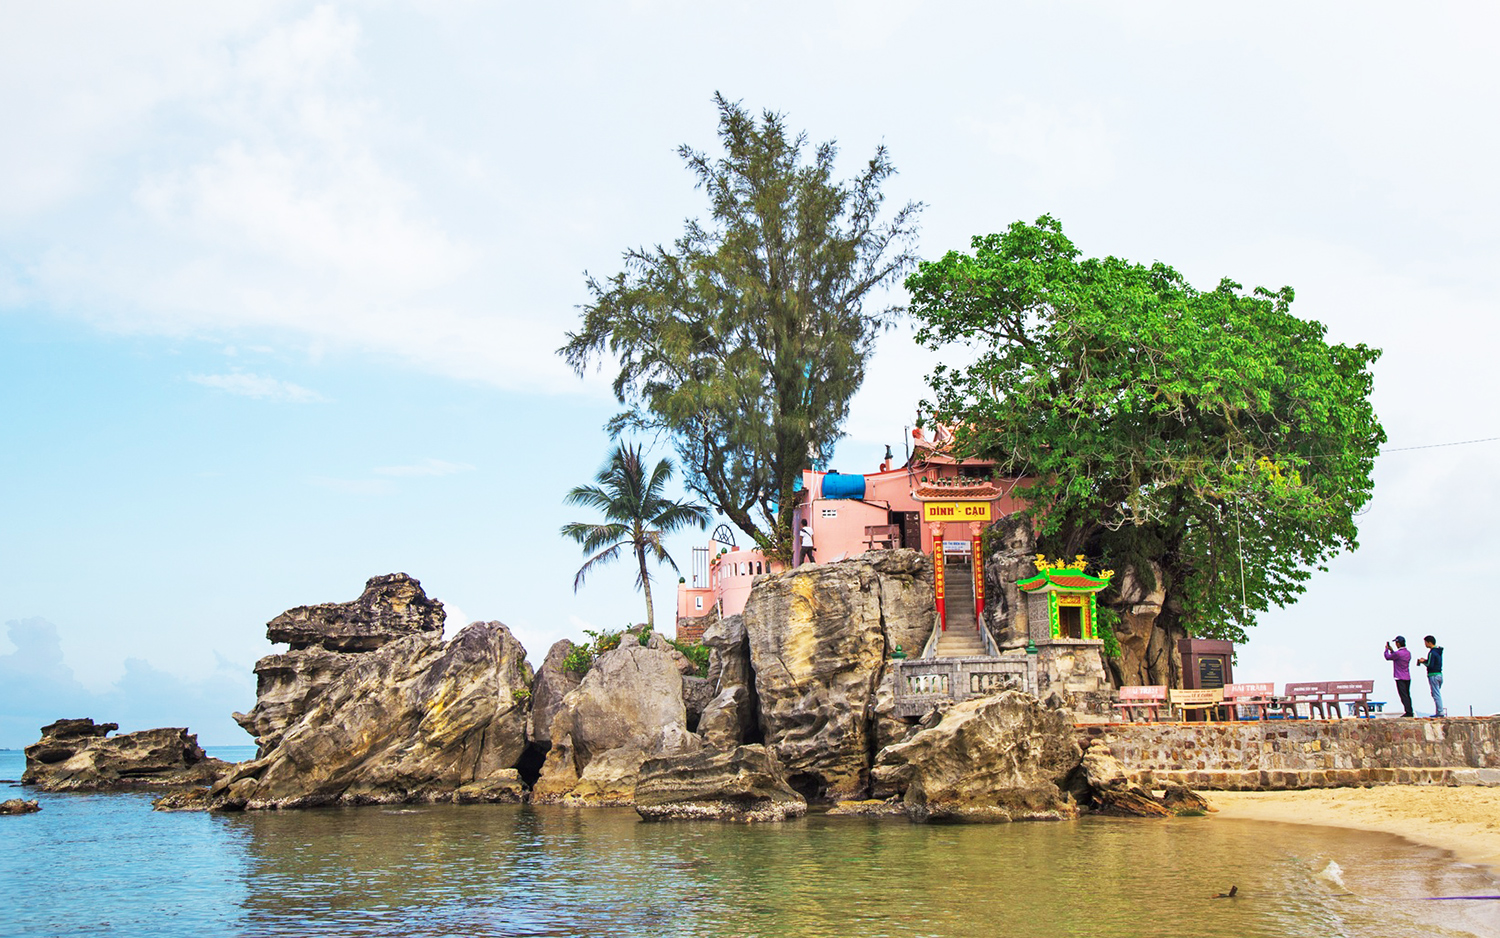 Cosa fare a Phu Quoc: vistare il tempio Dinh Cau 